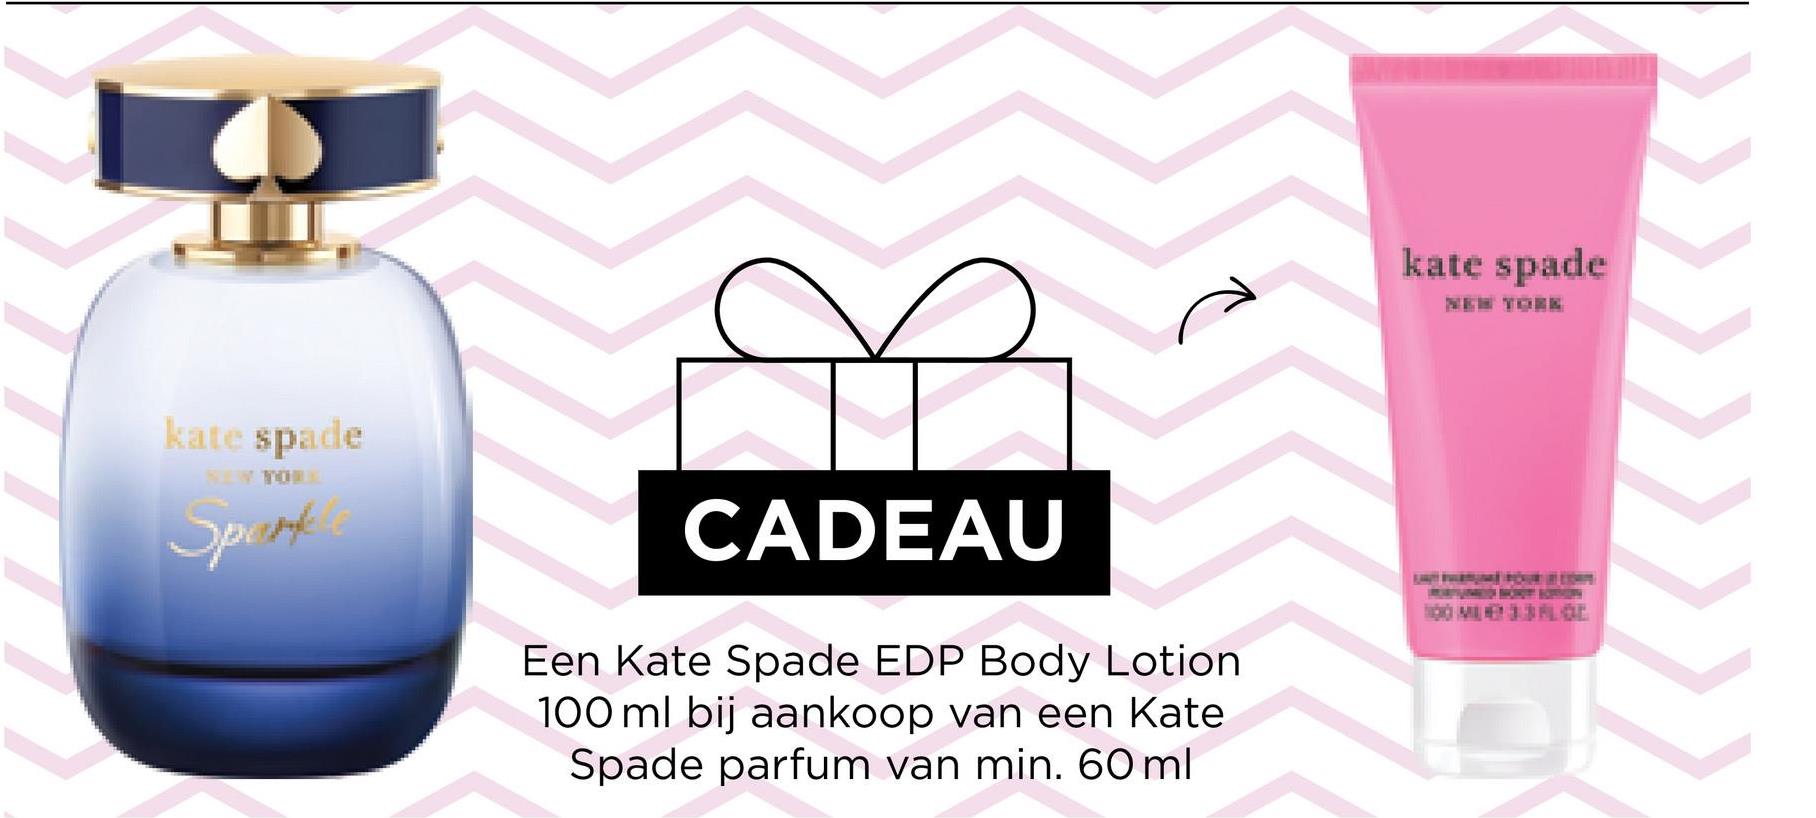 kate spade
Sport
CADEAU
Een Kate Spade EDP Body Lotion
100 ml bij aankoop van een Kate
Spade parfum van min. 60 ml
kate spade